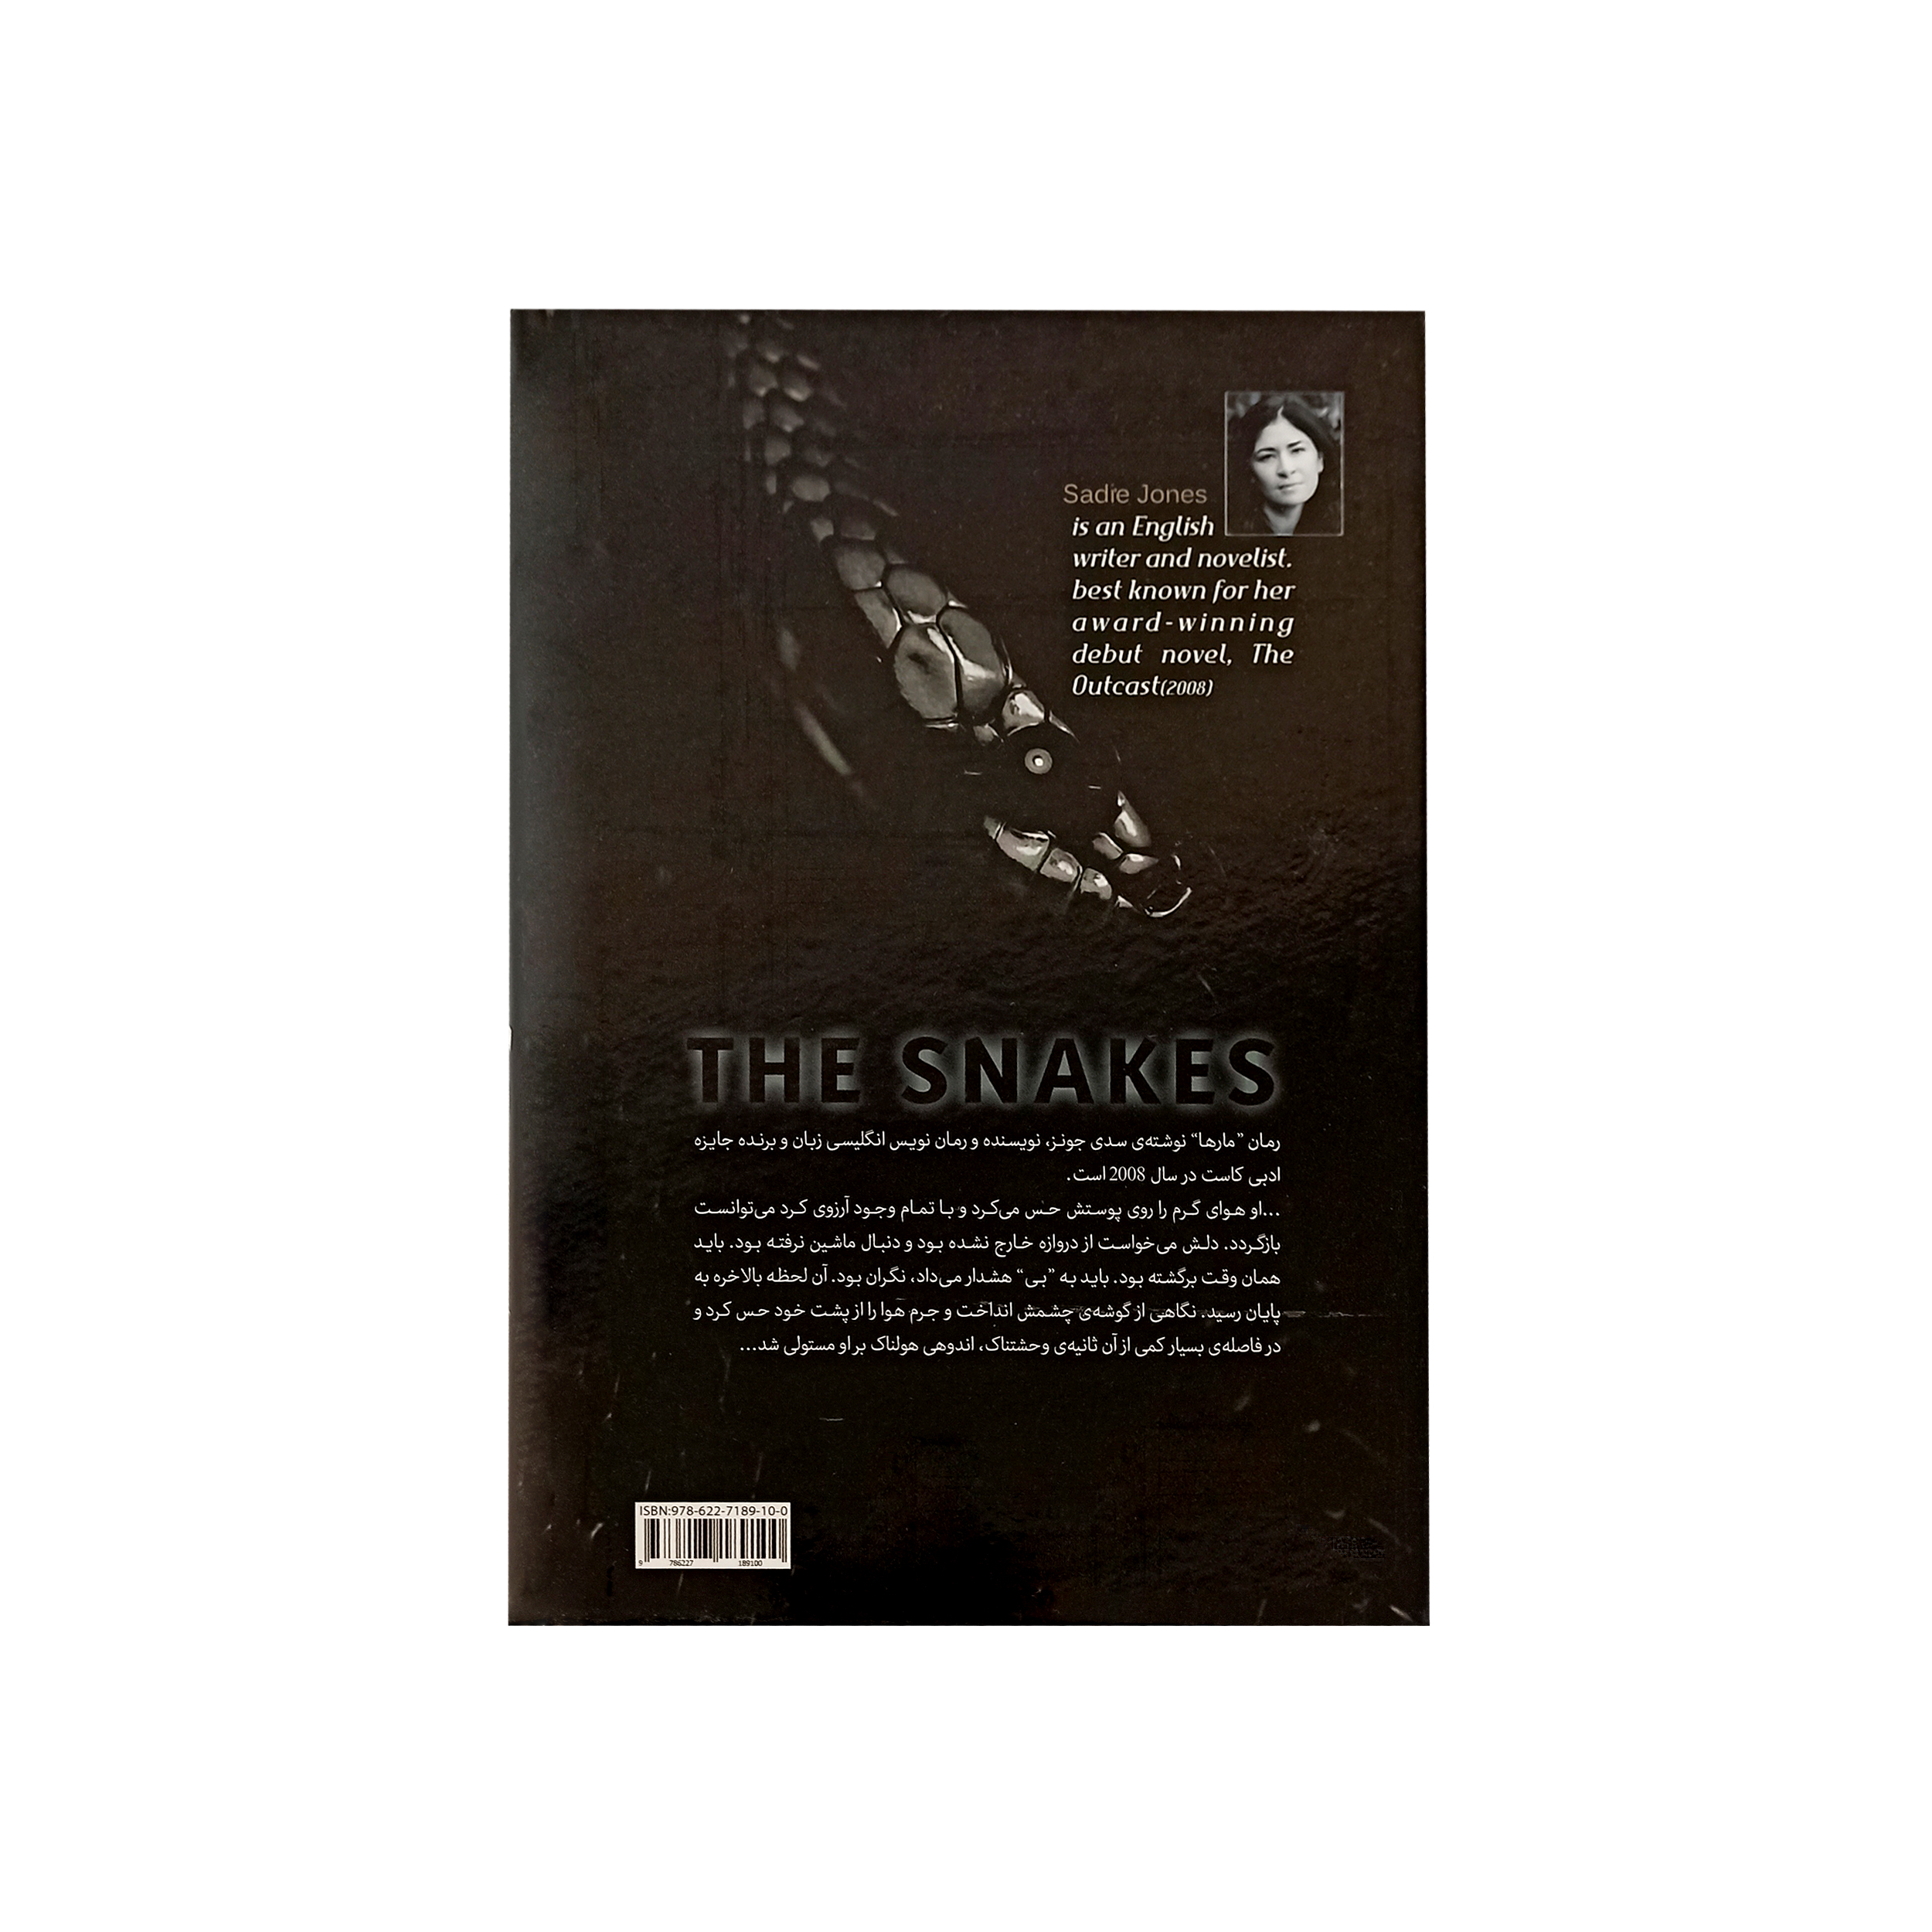  خرید اینترنتی با تخفیف ویژه کتاب مارها اثر سدی جونز نشر نسیم قلم